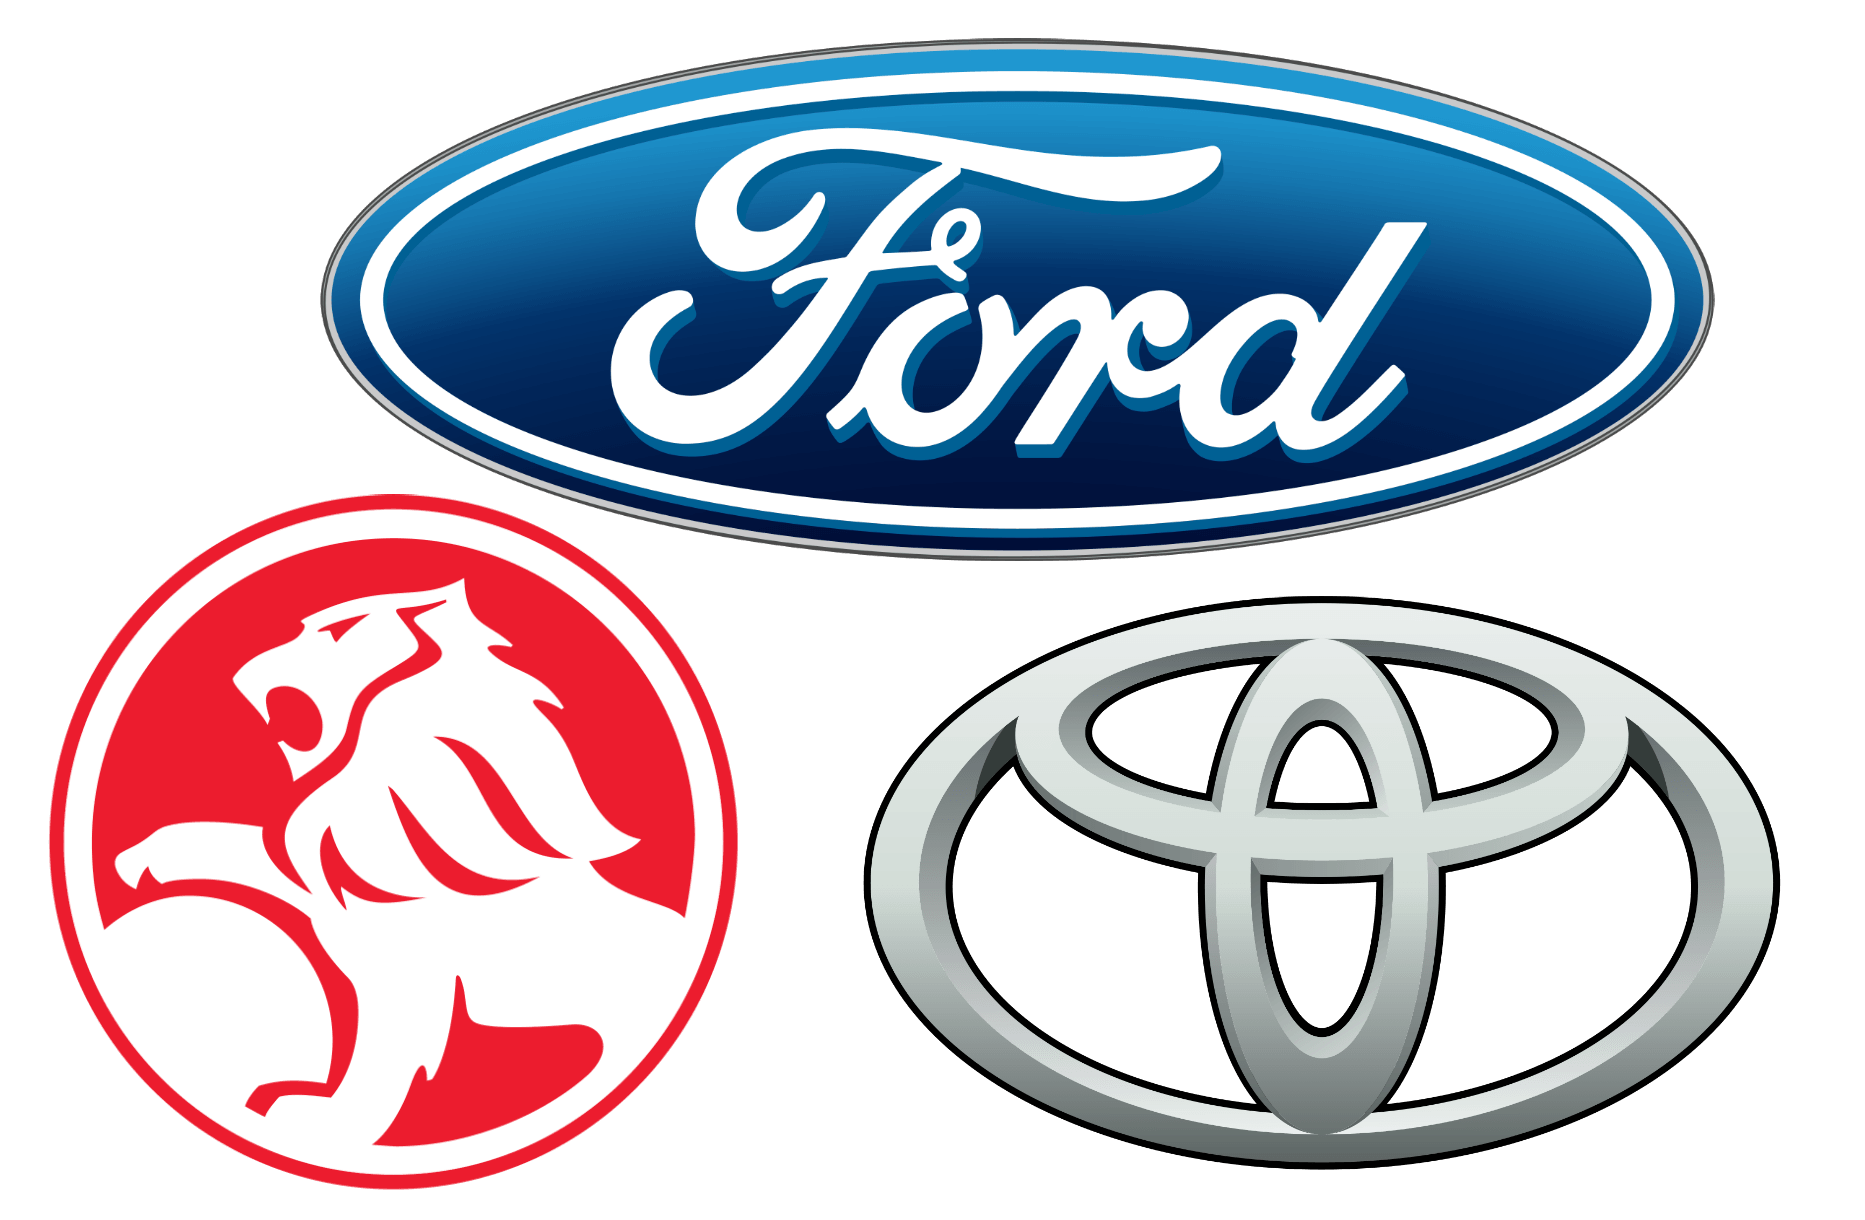 Most Popular Car Company Logo - Australian Car Brands, Companies and Manufacturers | Car Brand Names.com